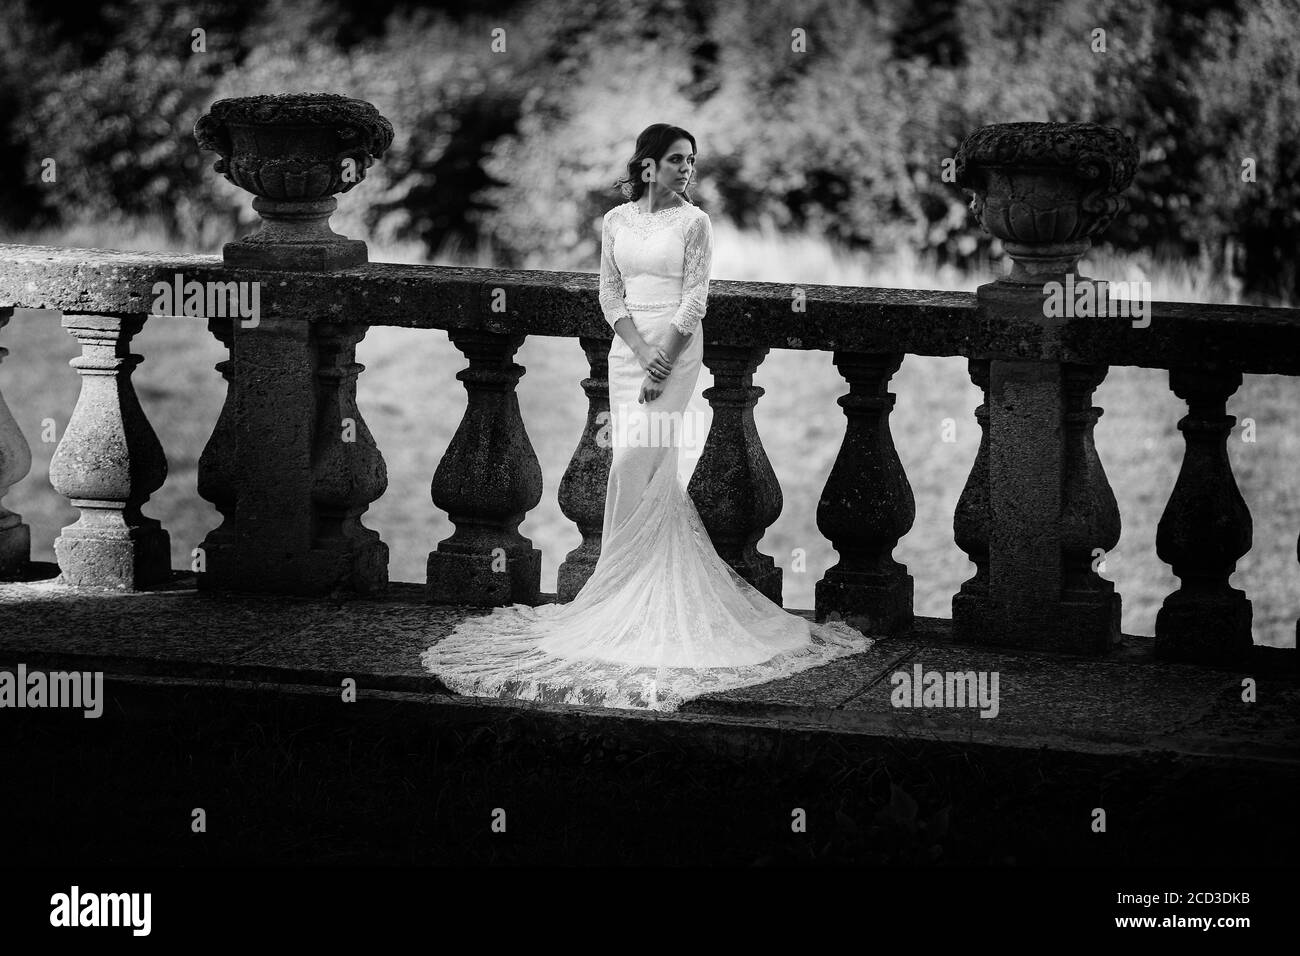 Eine schöne Braut in einem luxuriösen Kleid steht auf einem großen Balkon. Schwarzweiß-Foto Stockfoto